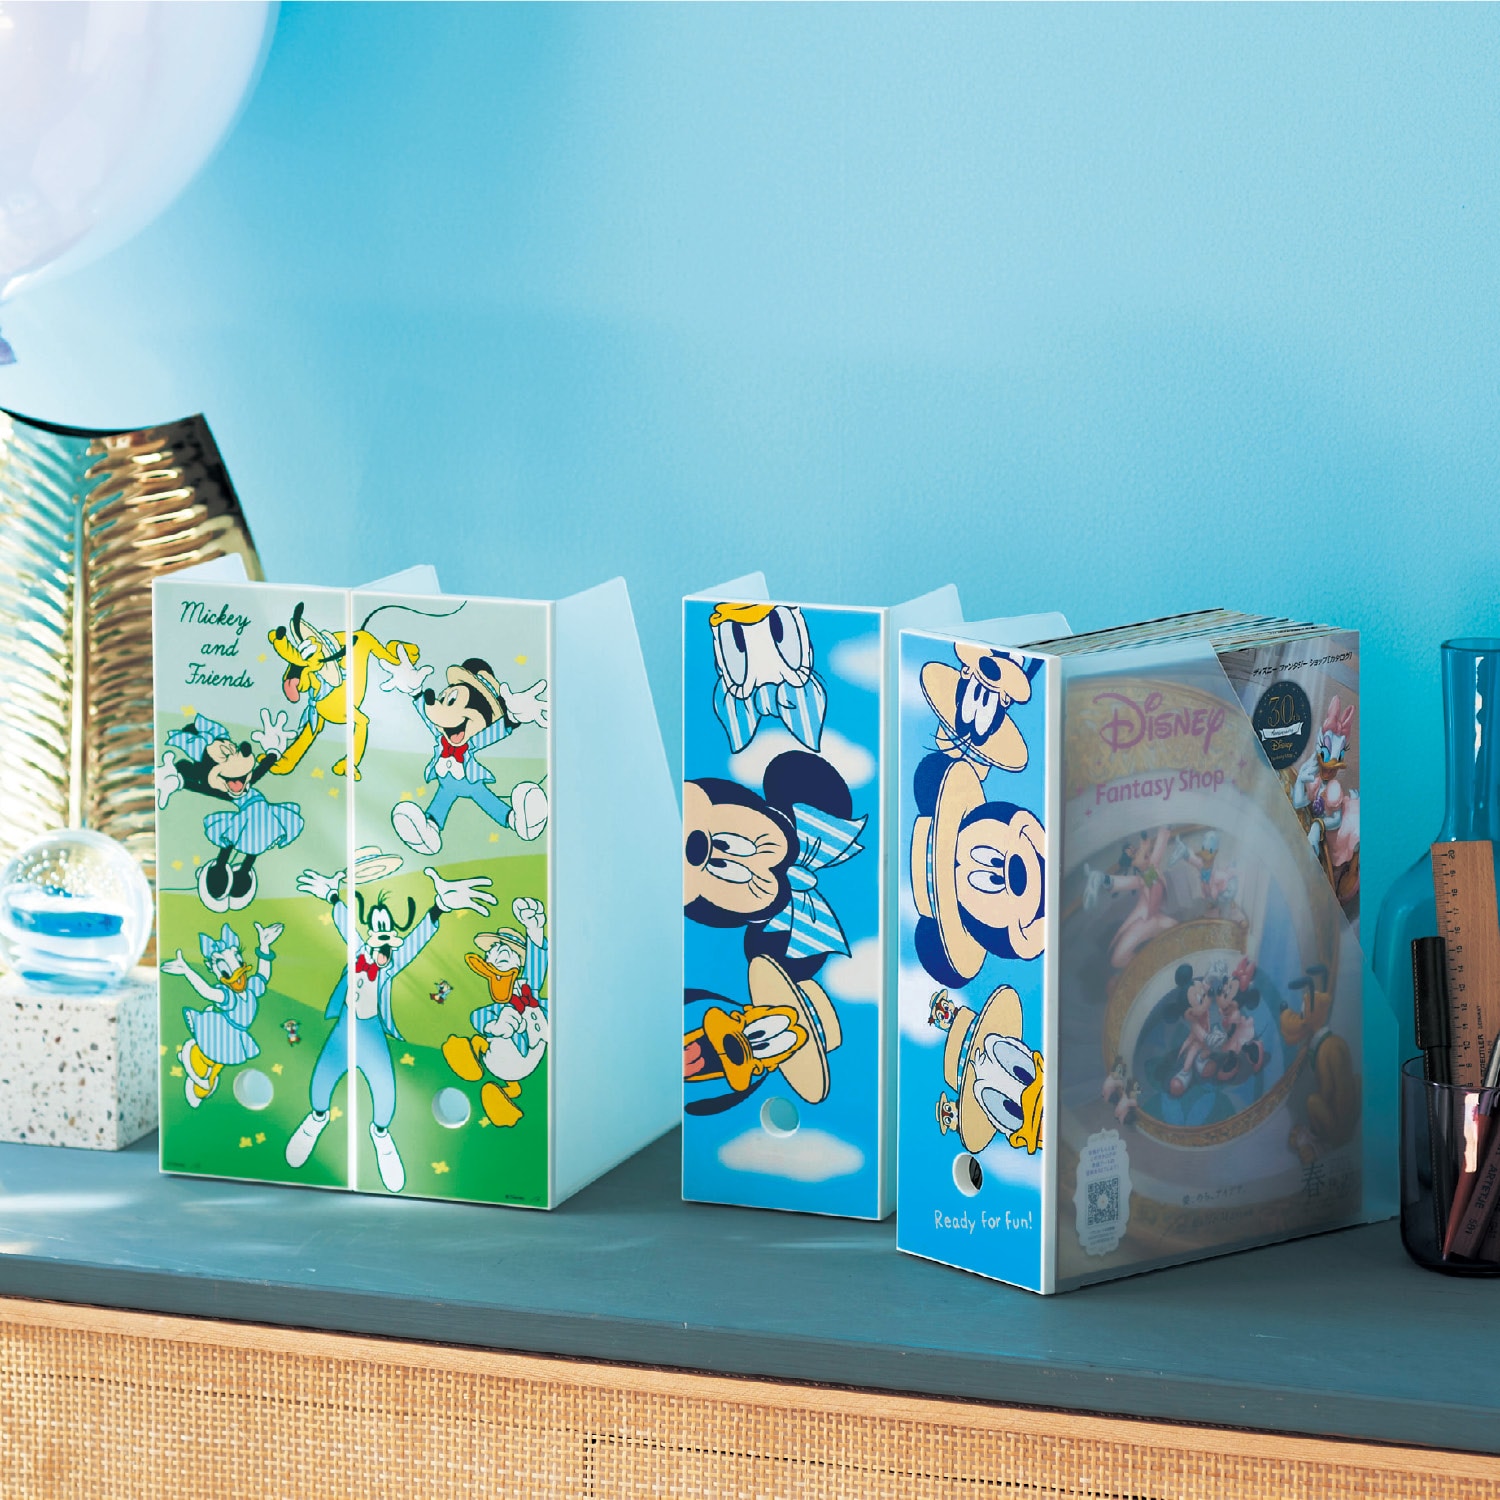 【ディズニー/Disney】【DisneyFantasyShop30周年限定品】 頑丈ファイルラック2柄セット「ミッキー & フレンズ」画像